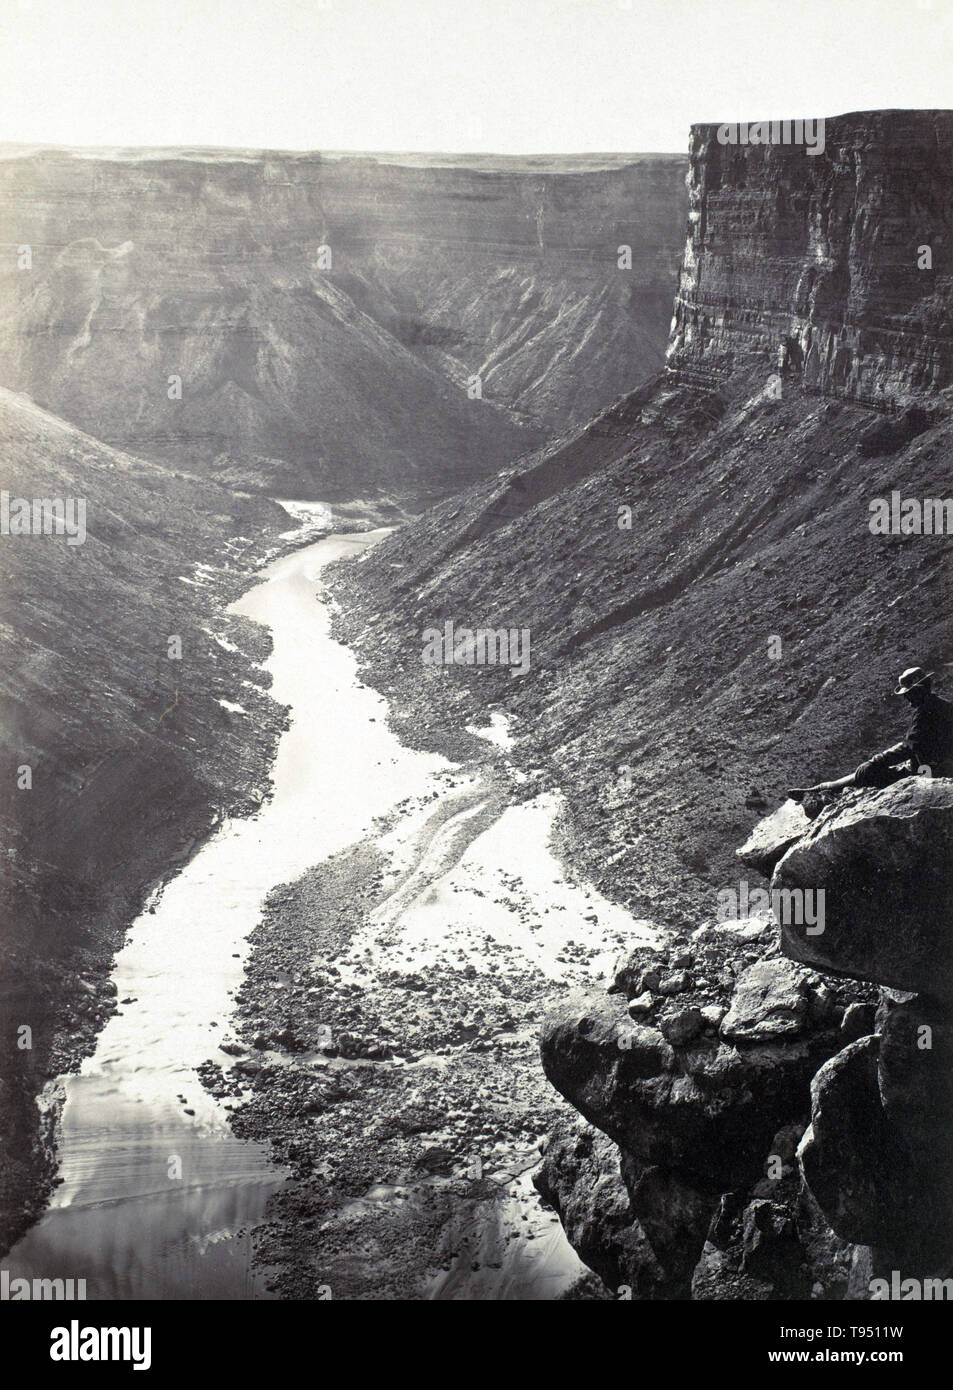 Guardando ad ovest oltre il Fiume Colorado vicino Paria Creek nel Grand Canyon. Fotografato da William Bell (1831-1910) nel 1872. Foto Stock